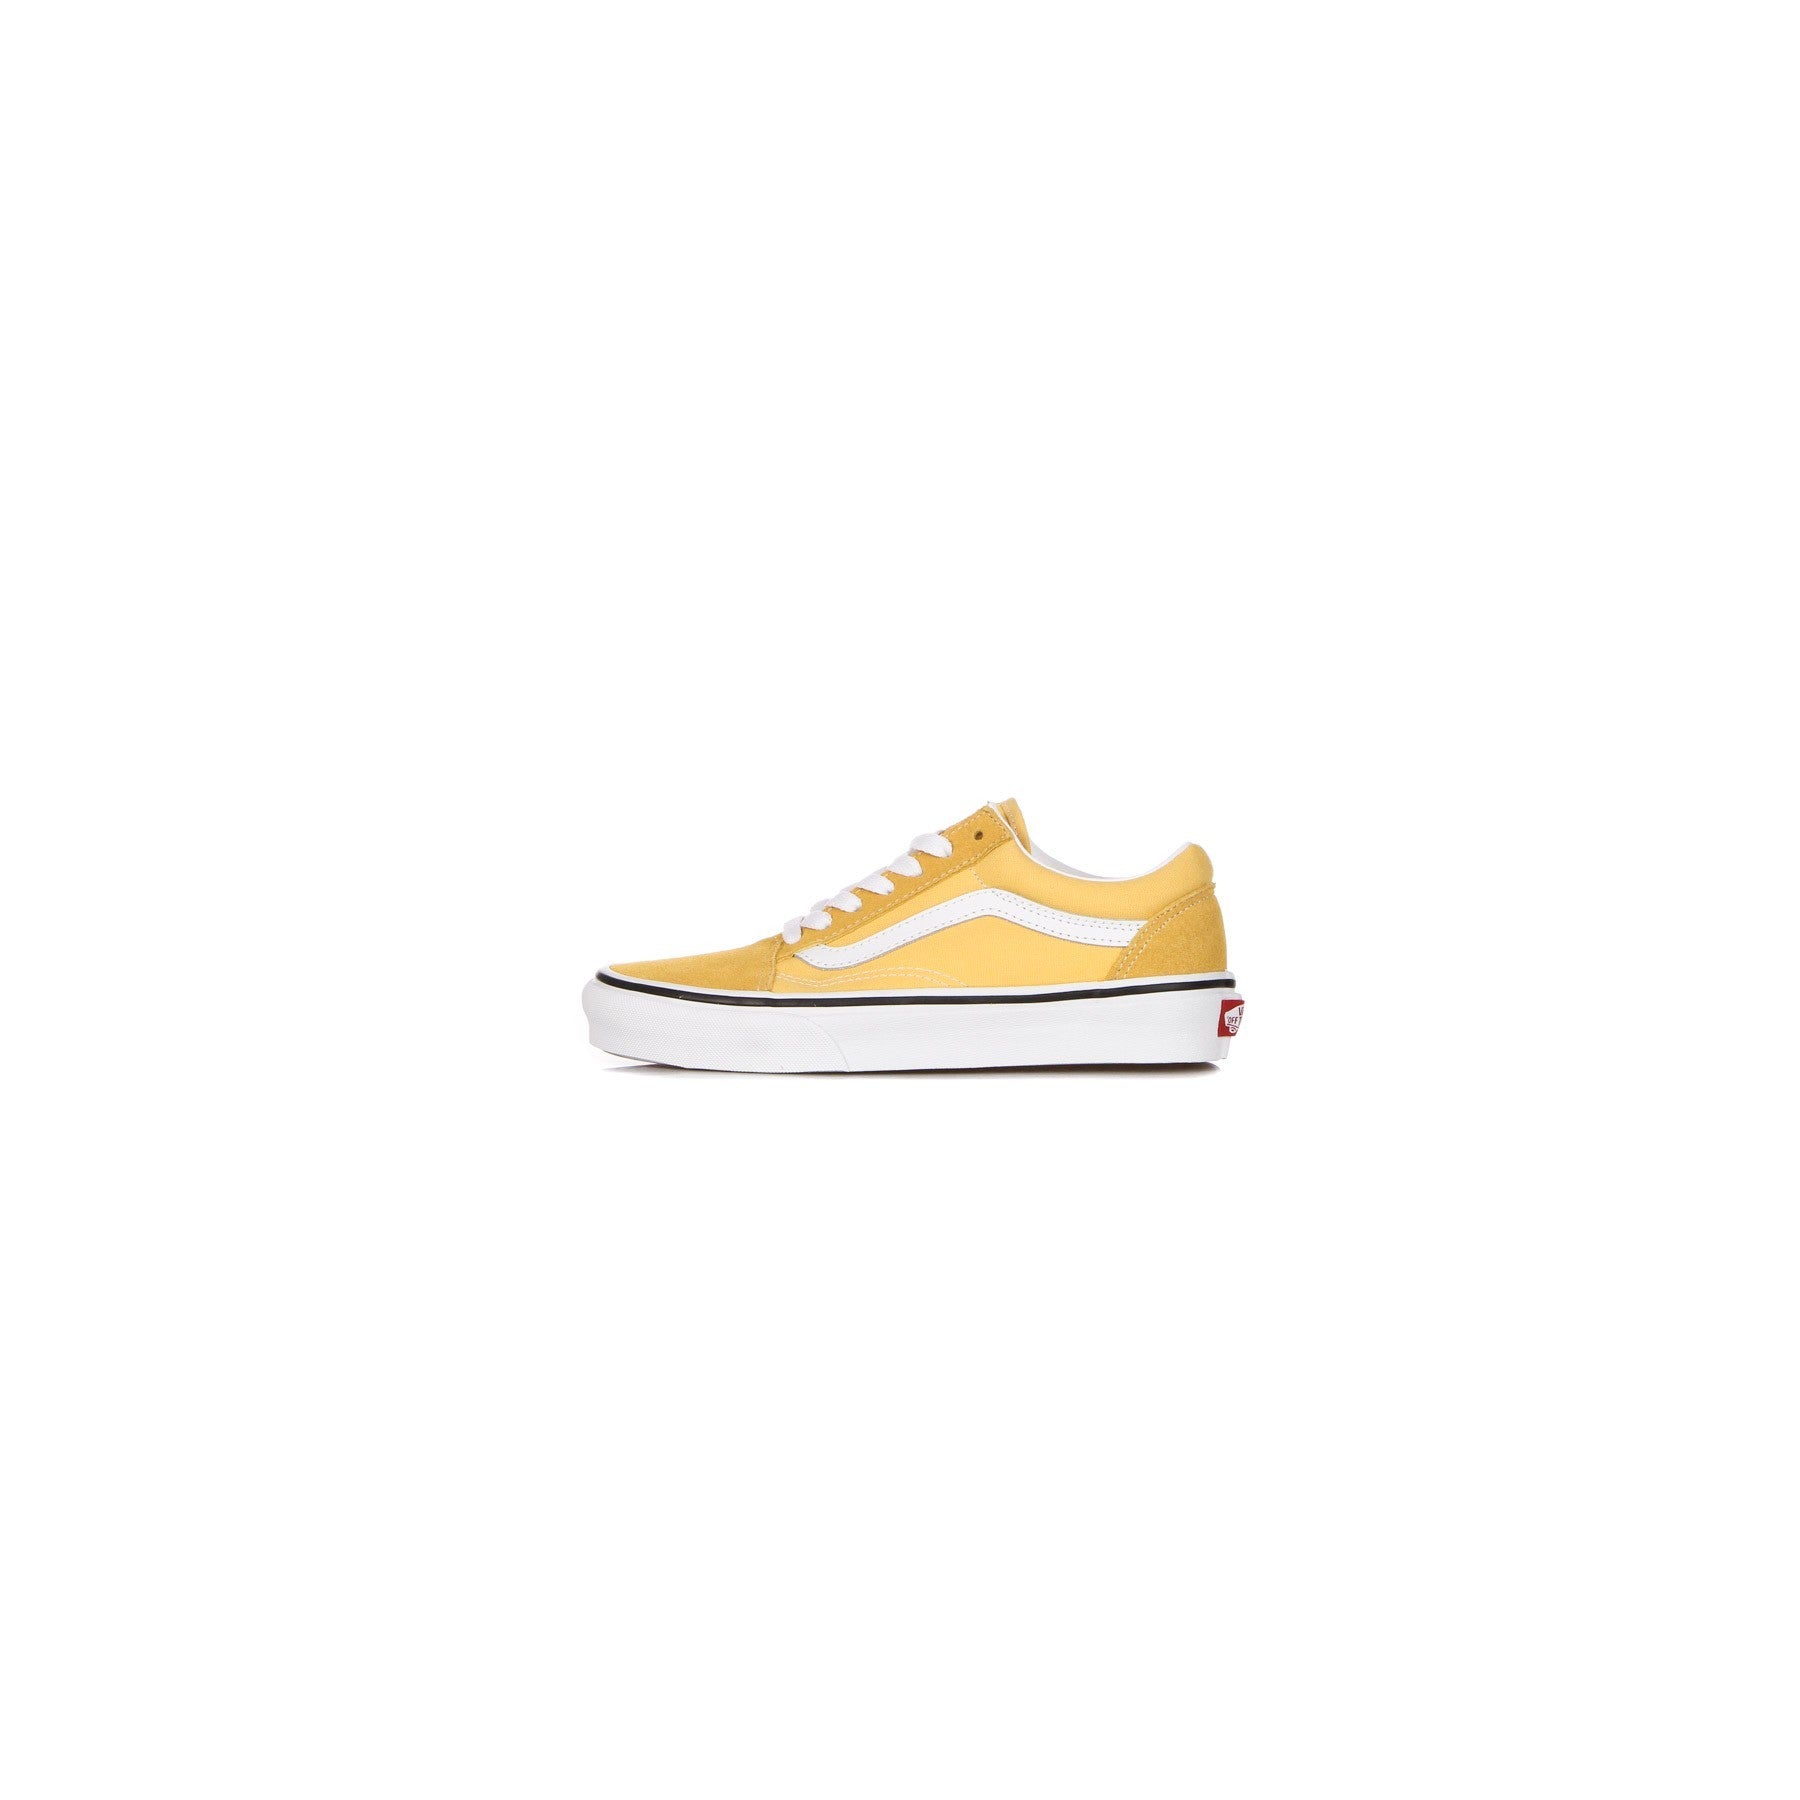 Vans Old Skool VN0A5KRFAVL1 adult sneakers shoe yellow white